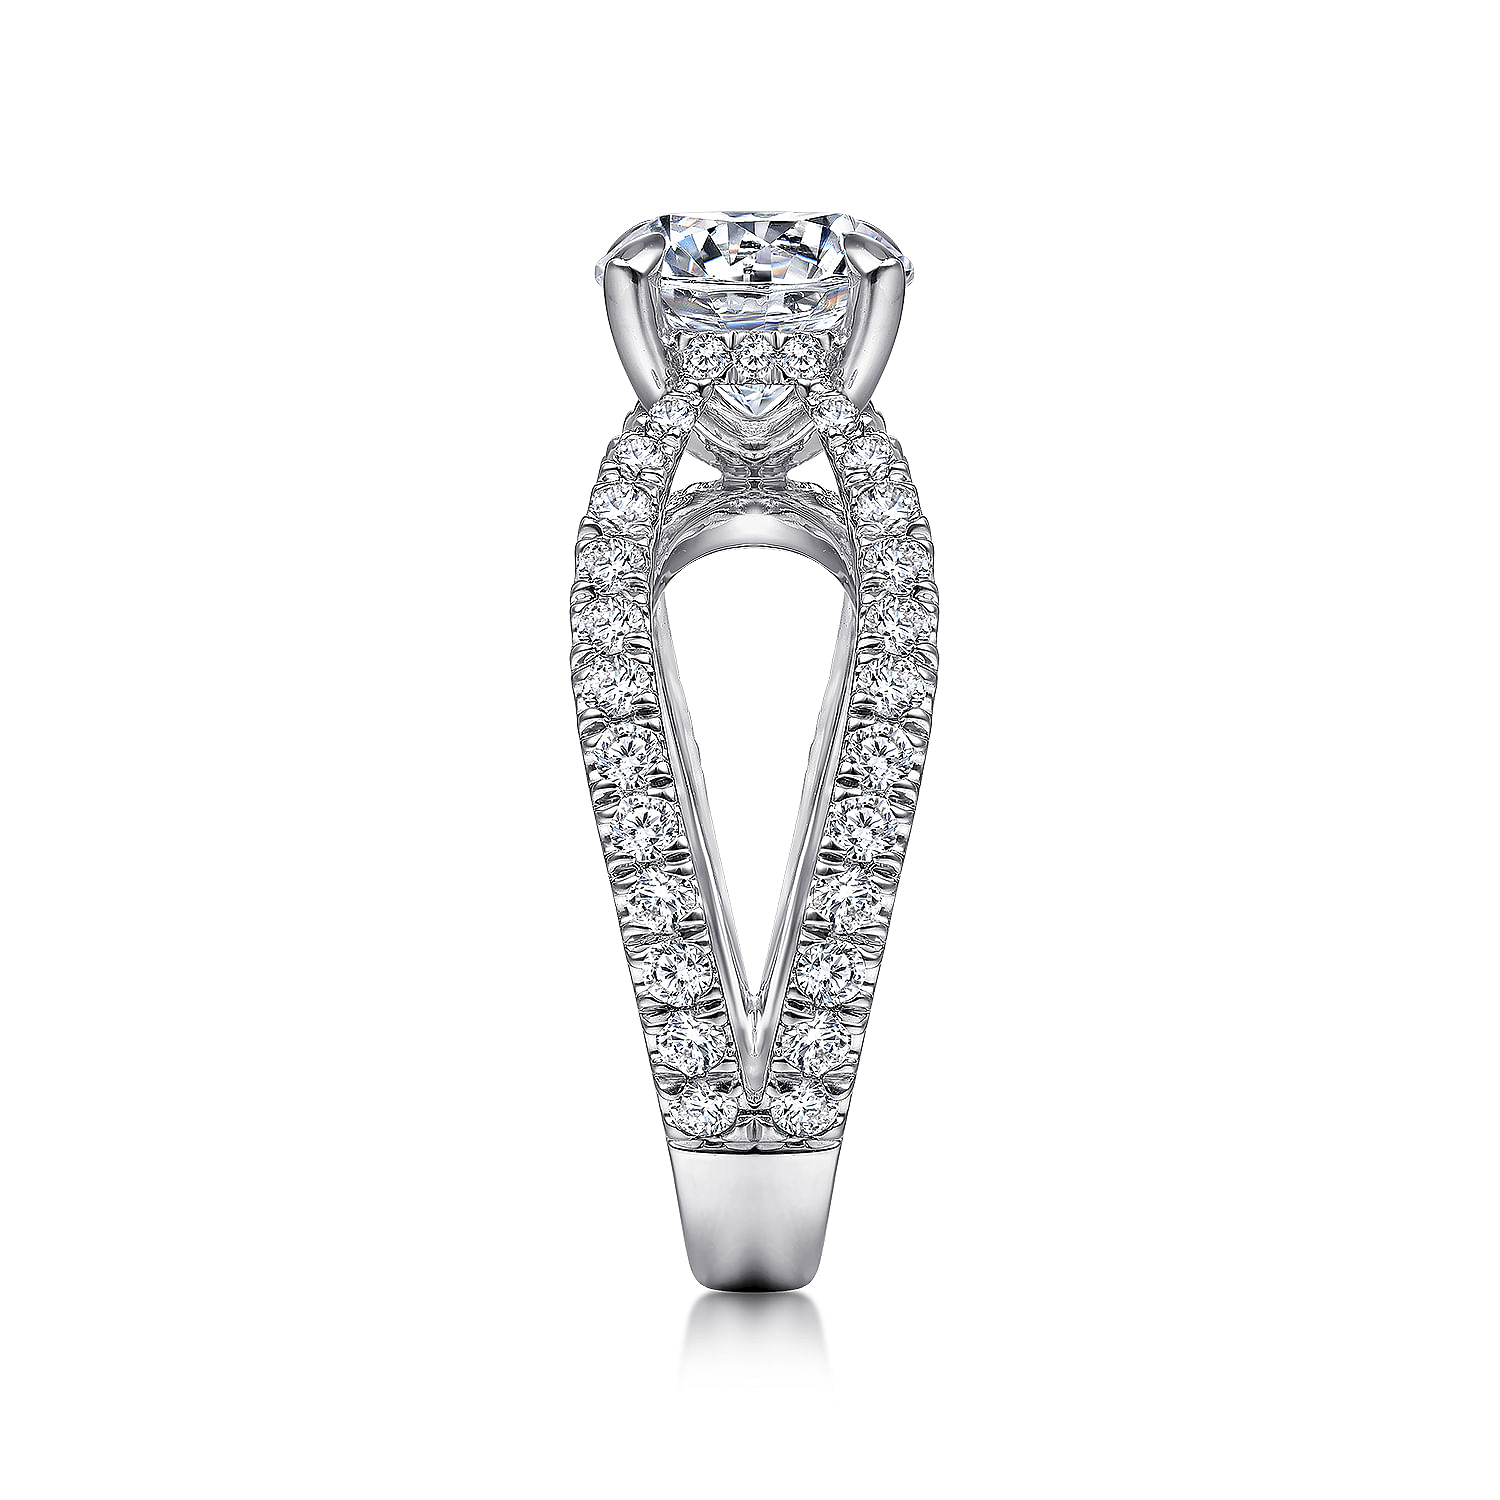 18K White Gold Split Shank Round Diamond Engagement Ring